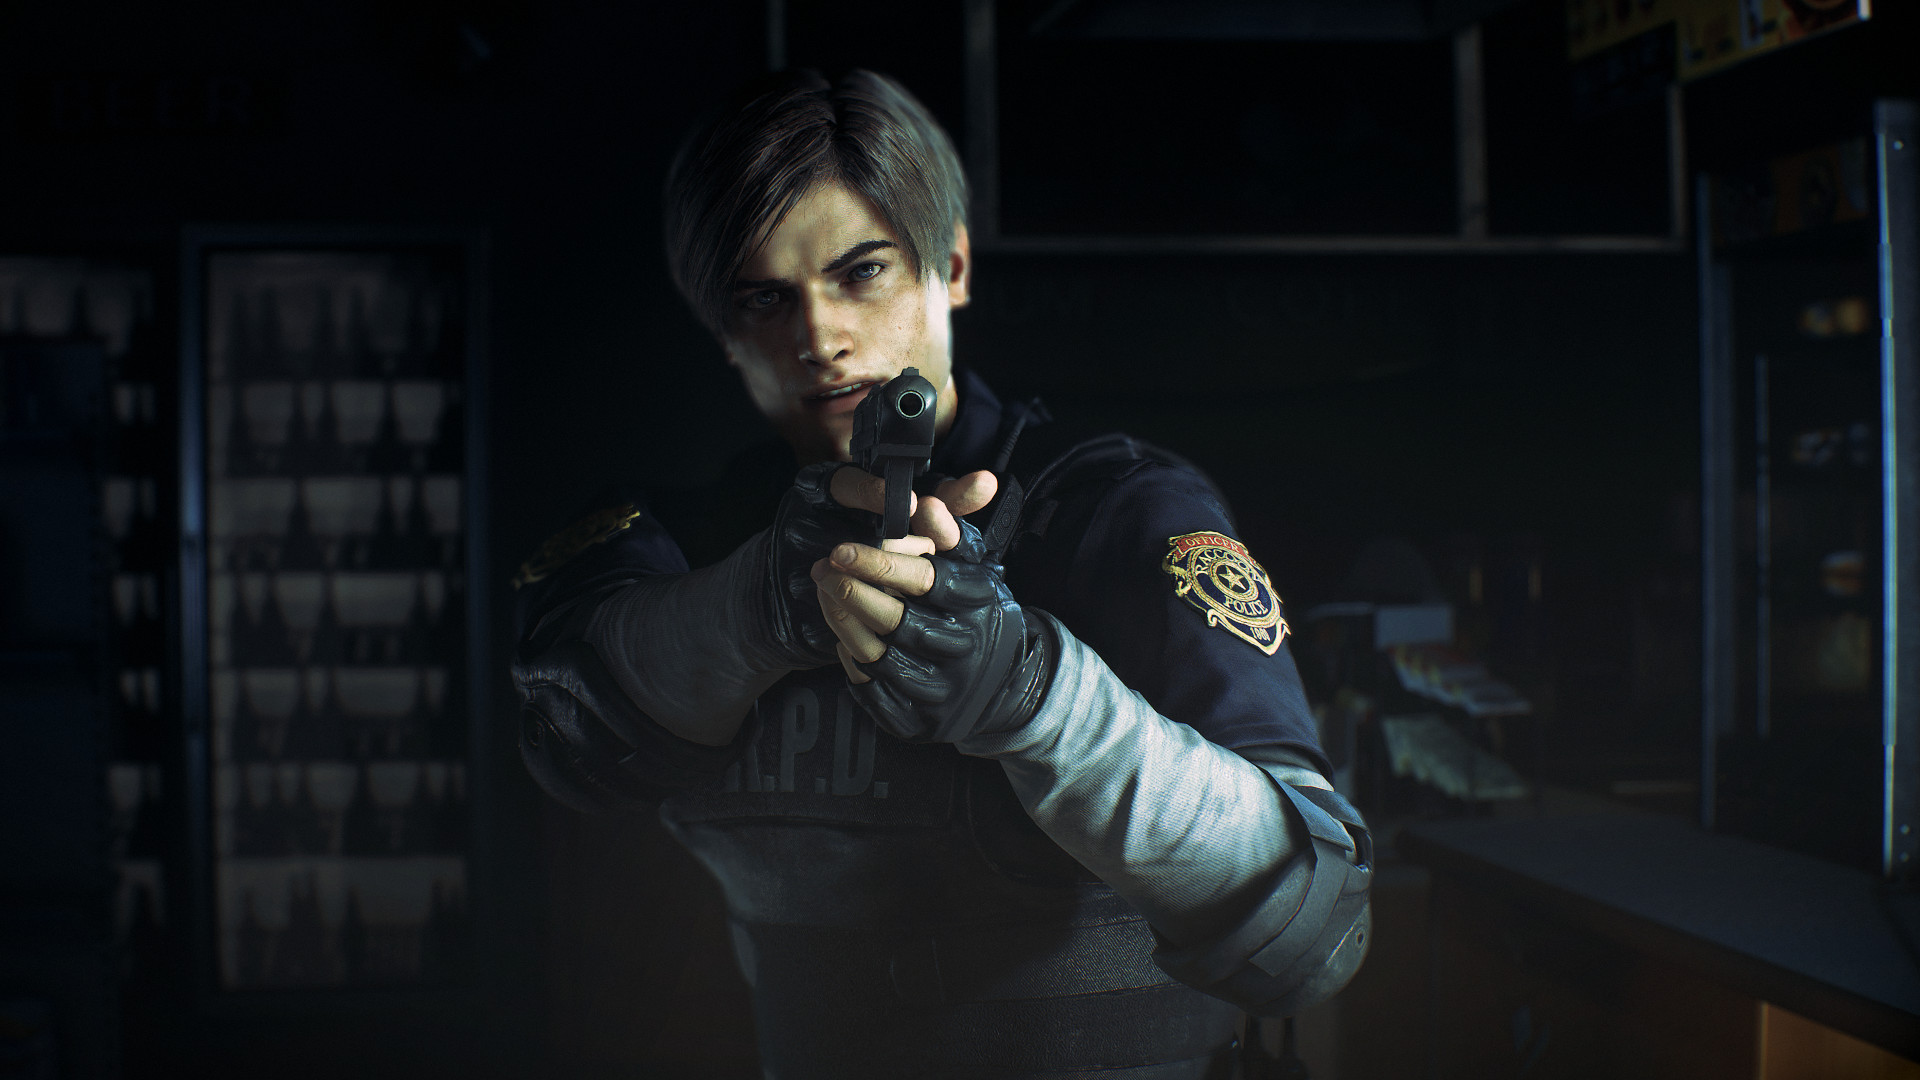 Resident Evil 2 Remake ya puede decir que es el juego más vendido de toda  la saga